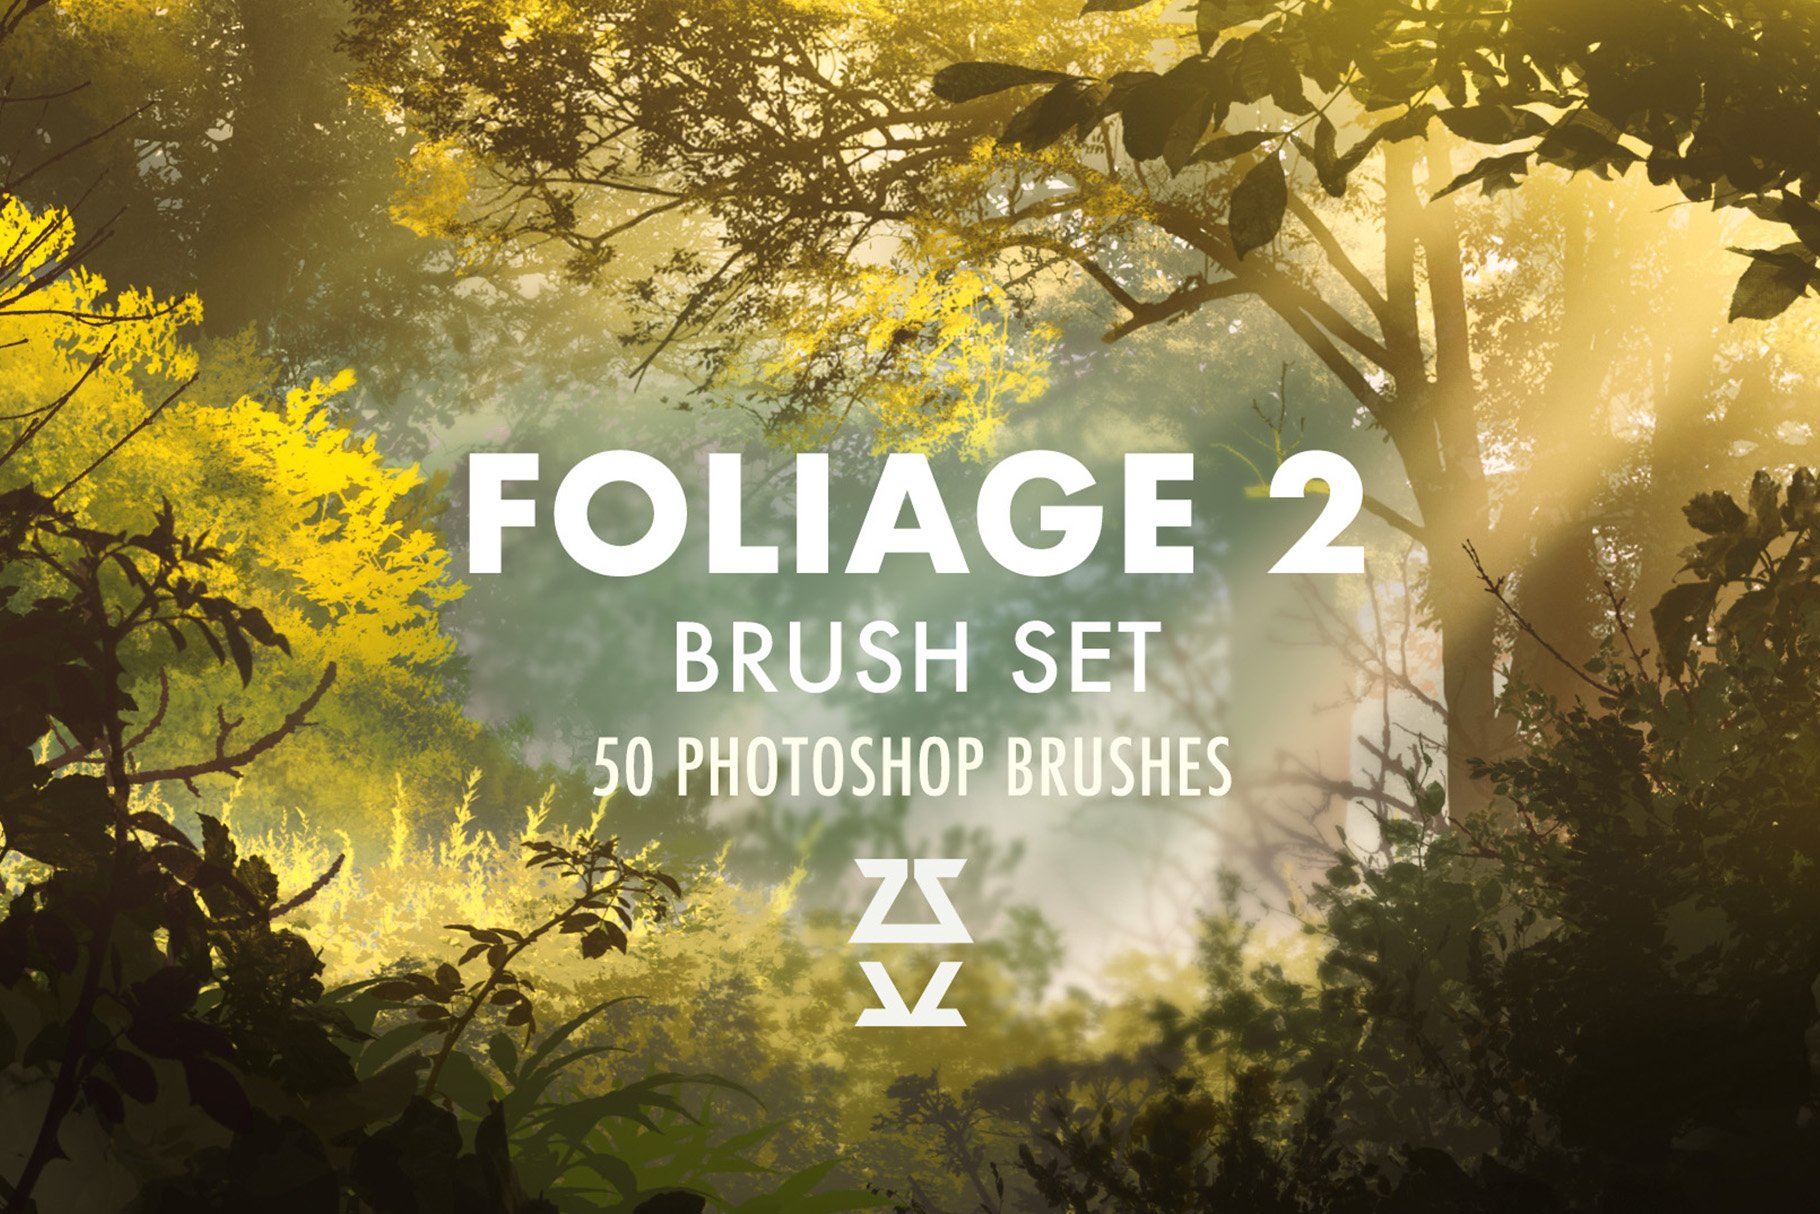 Foliage 2 Brush Setcover image.